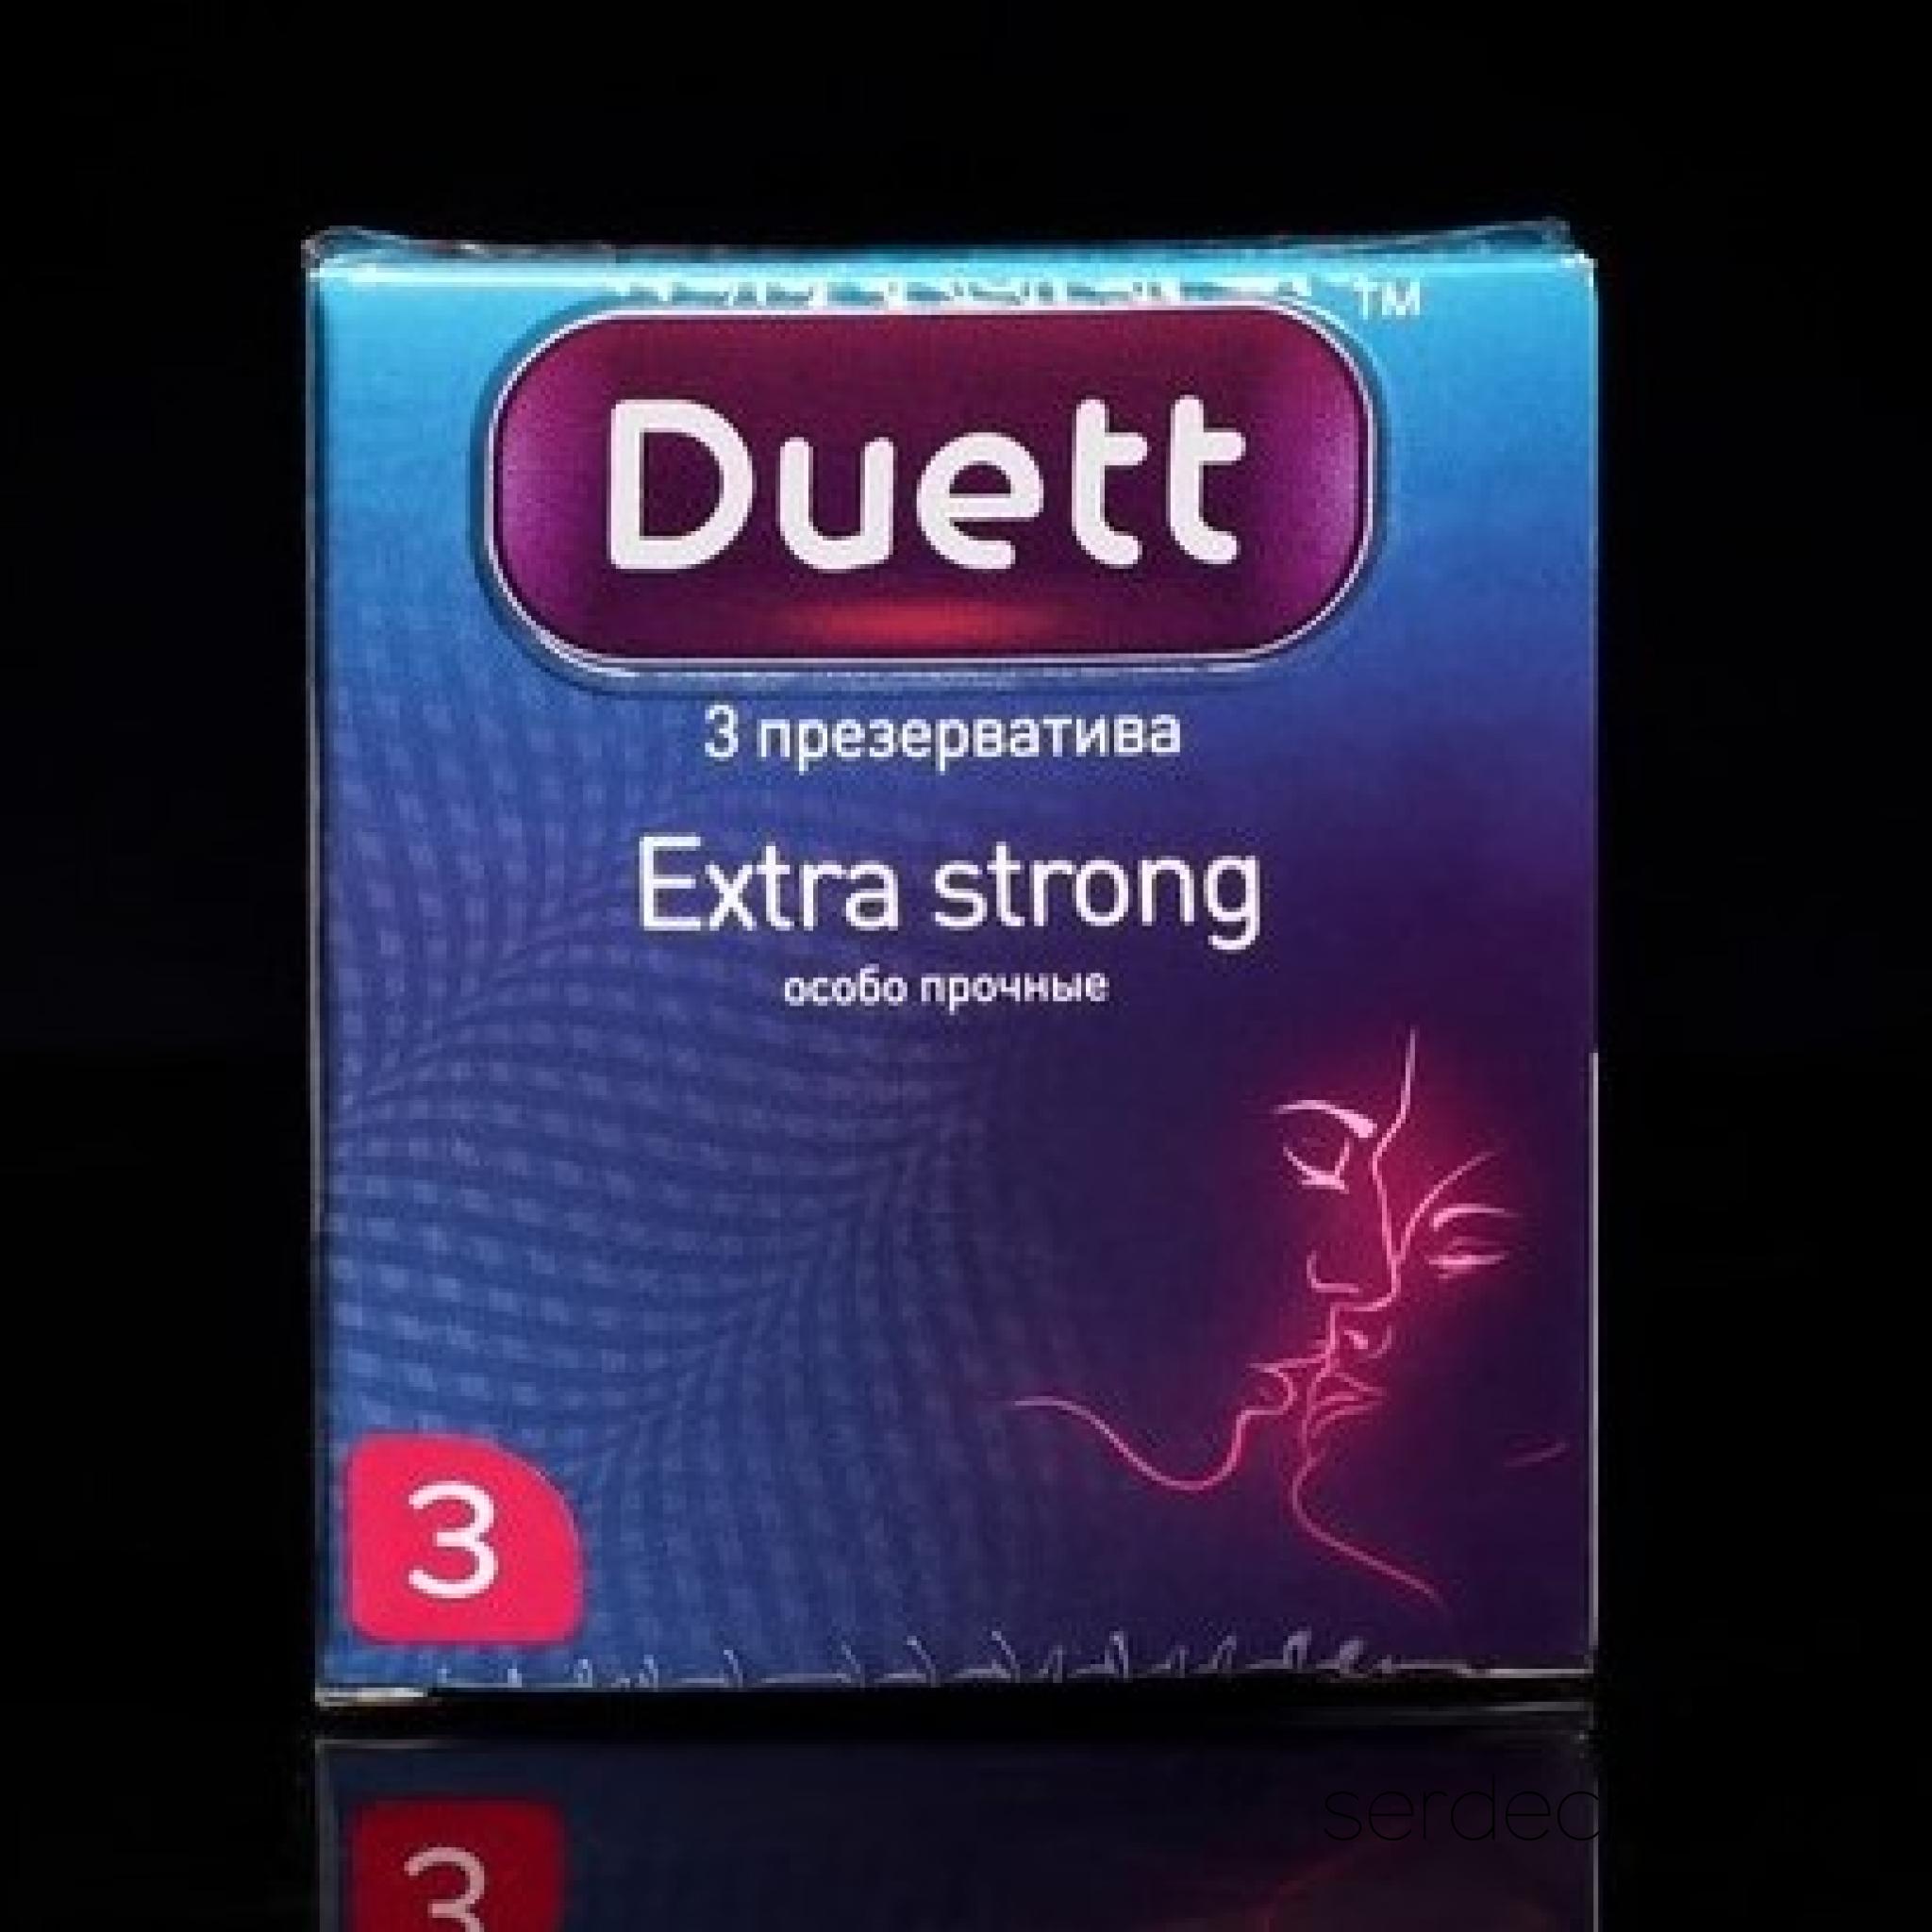 Презервативы DUETT Extra Strong 3 шт, 
	Особо прочные и надежные презервативы. Благодаря более плотной структуре презерватива позволяют сохранить комфорт обоих партнеров с дополнительной защитой во время интимной близости. Особо прочные презервативы из натурального латекса телесного цвета, с гладкой поверхностью, покрыты силиконовой смазкой с нейтральным ароматом.

	Презервативы DUETT-качественные презервативы из натурального латекса. каждый презерватив проходит 100% электронную проверку.

	Марка презервативов максимальной степени защиты, современный дизайн, абсолютная гарантия комфорта и максимальное удовольствие от интимных отношений.
